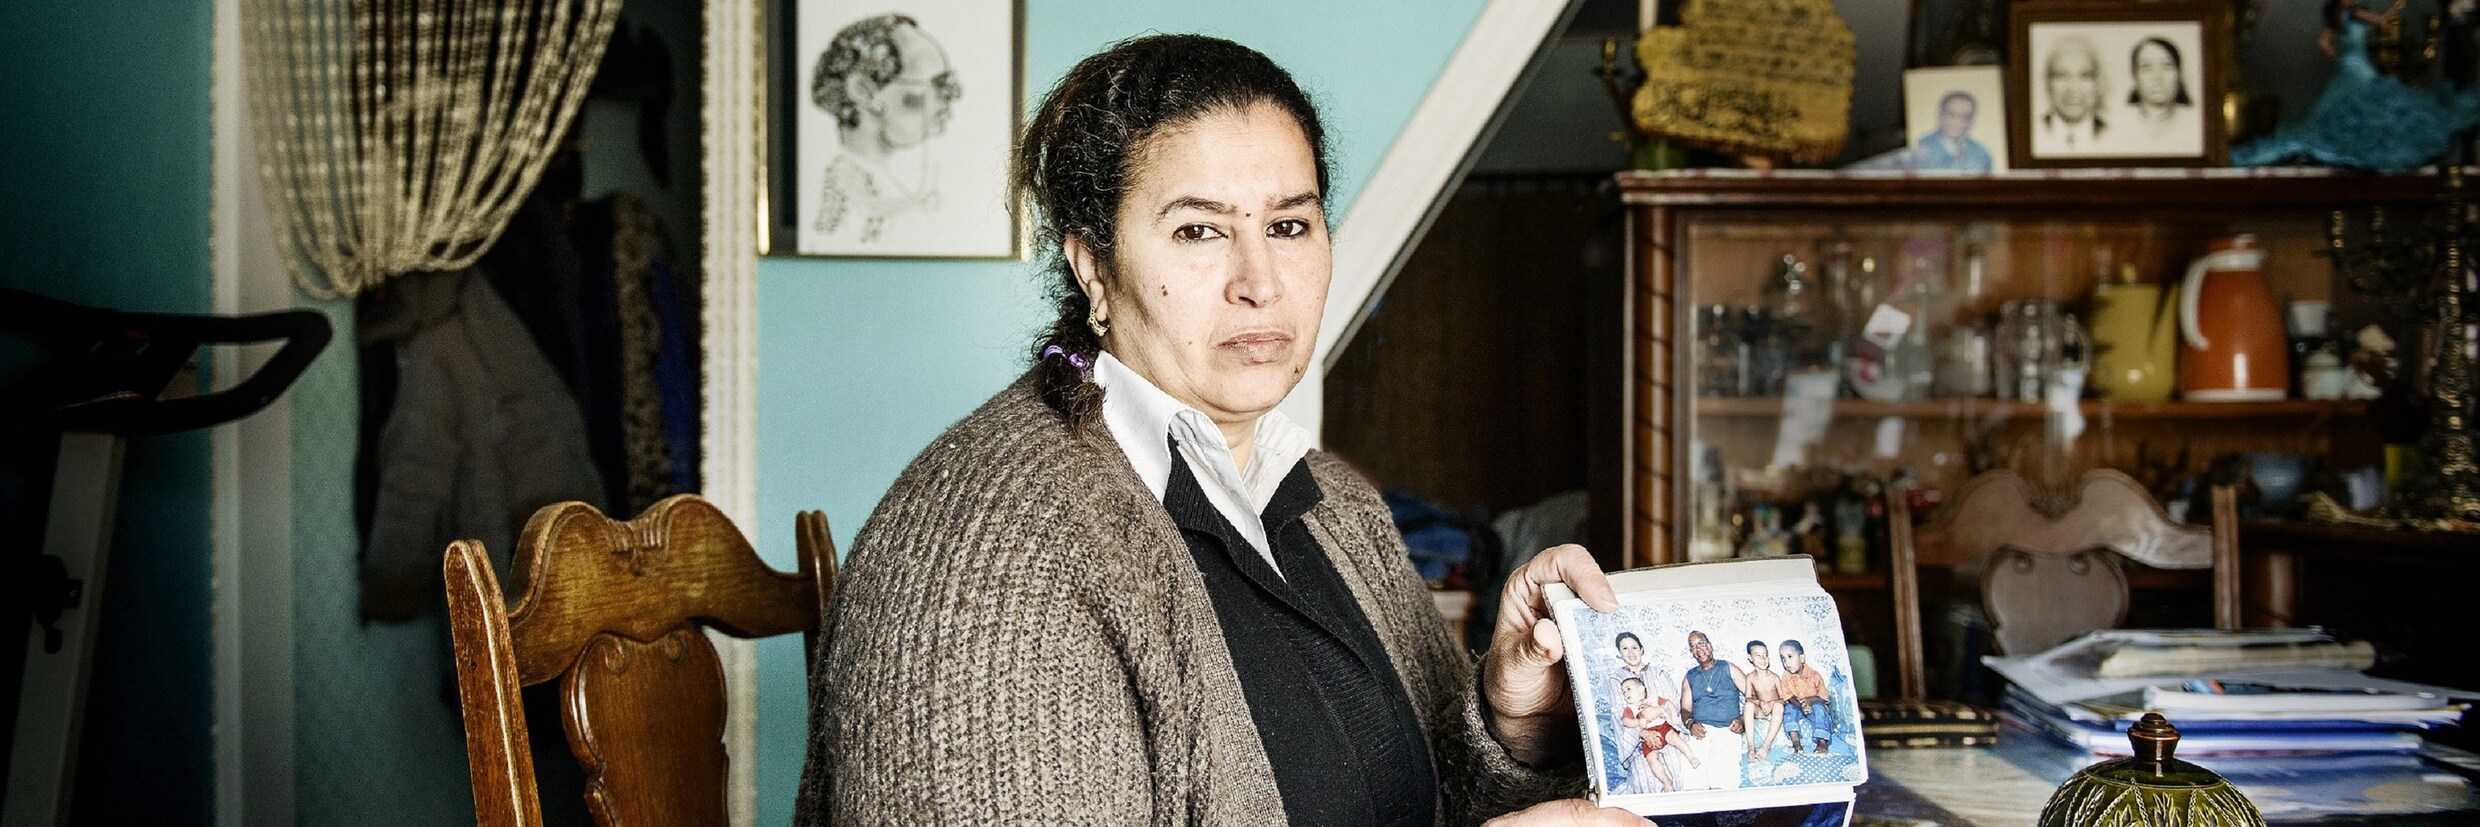 Naïma Zraidi, moeder van de vermoorde Younes, weet het nu zeker